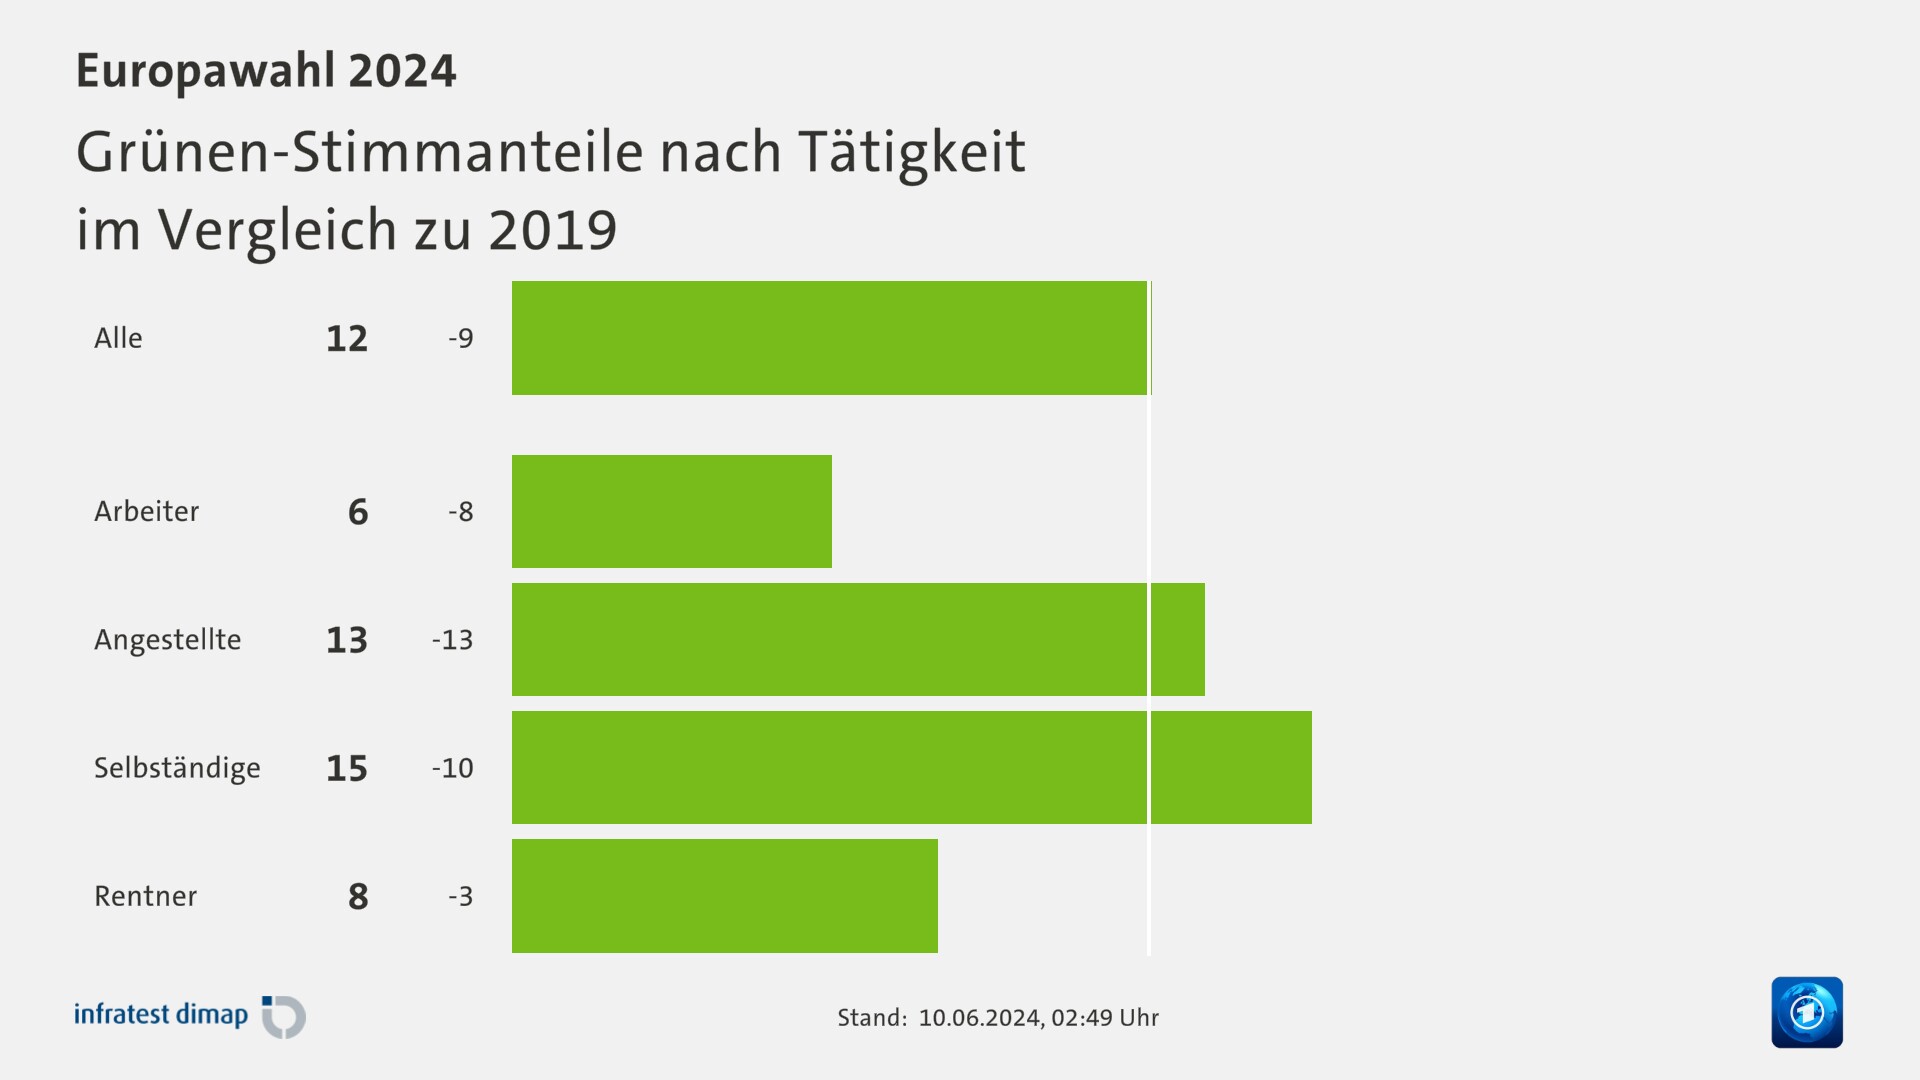 Grünen-Stimmanteile nach Tätigkeit|im Vergleich zu 2019